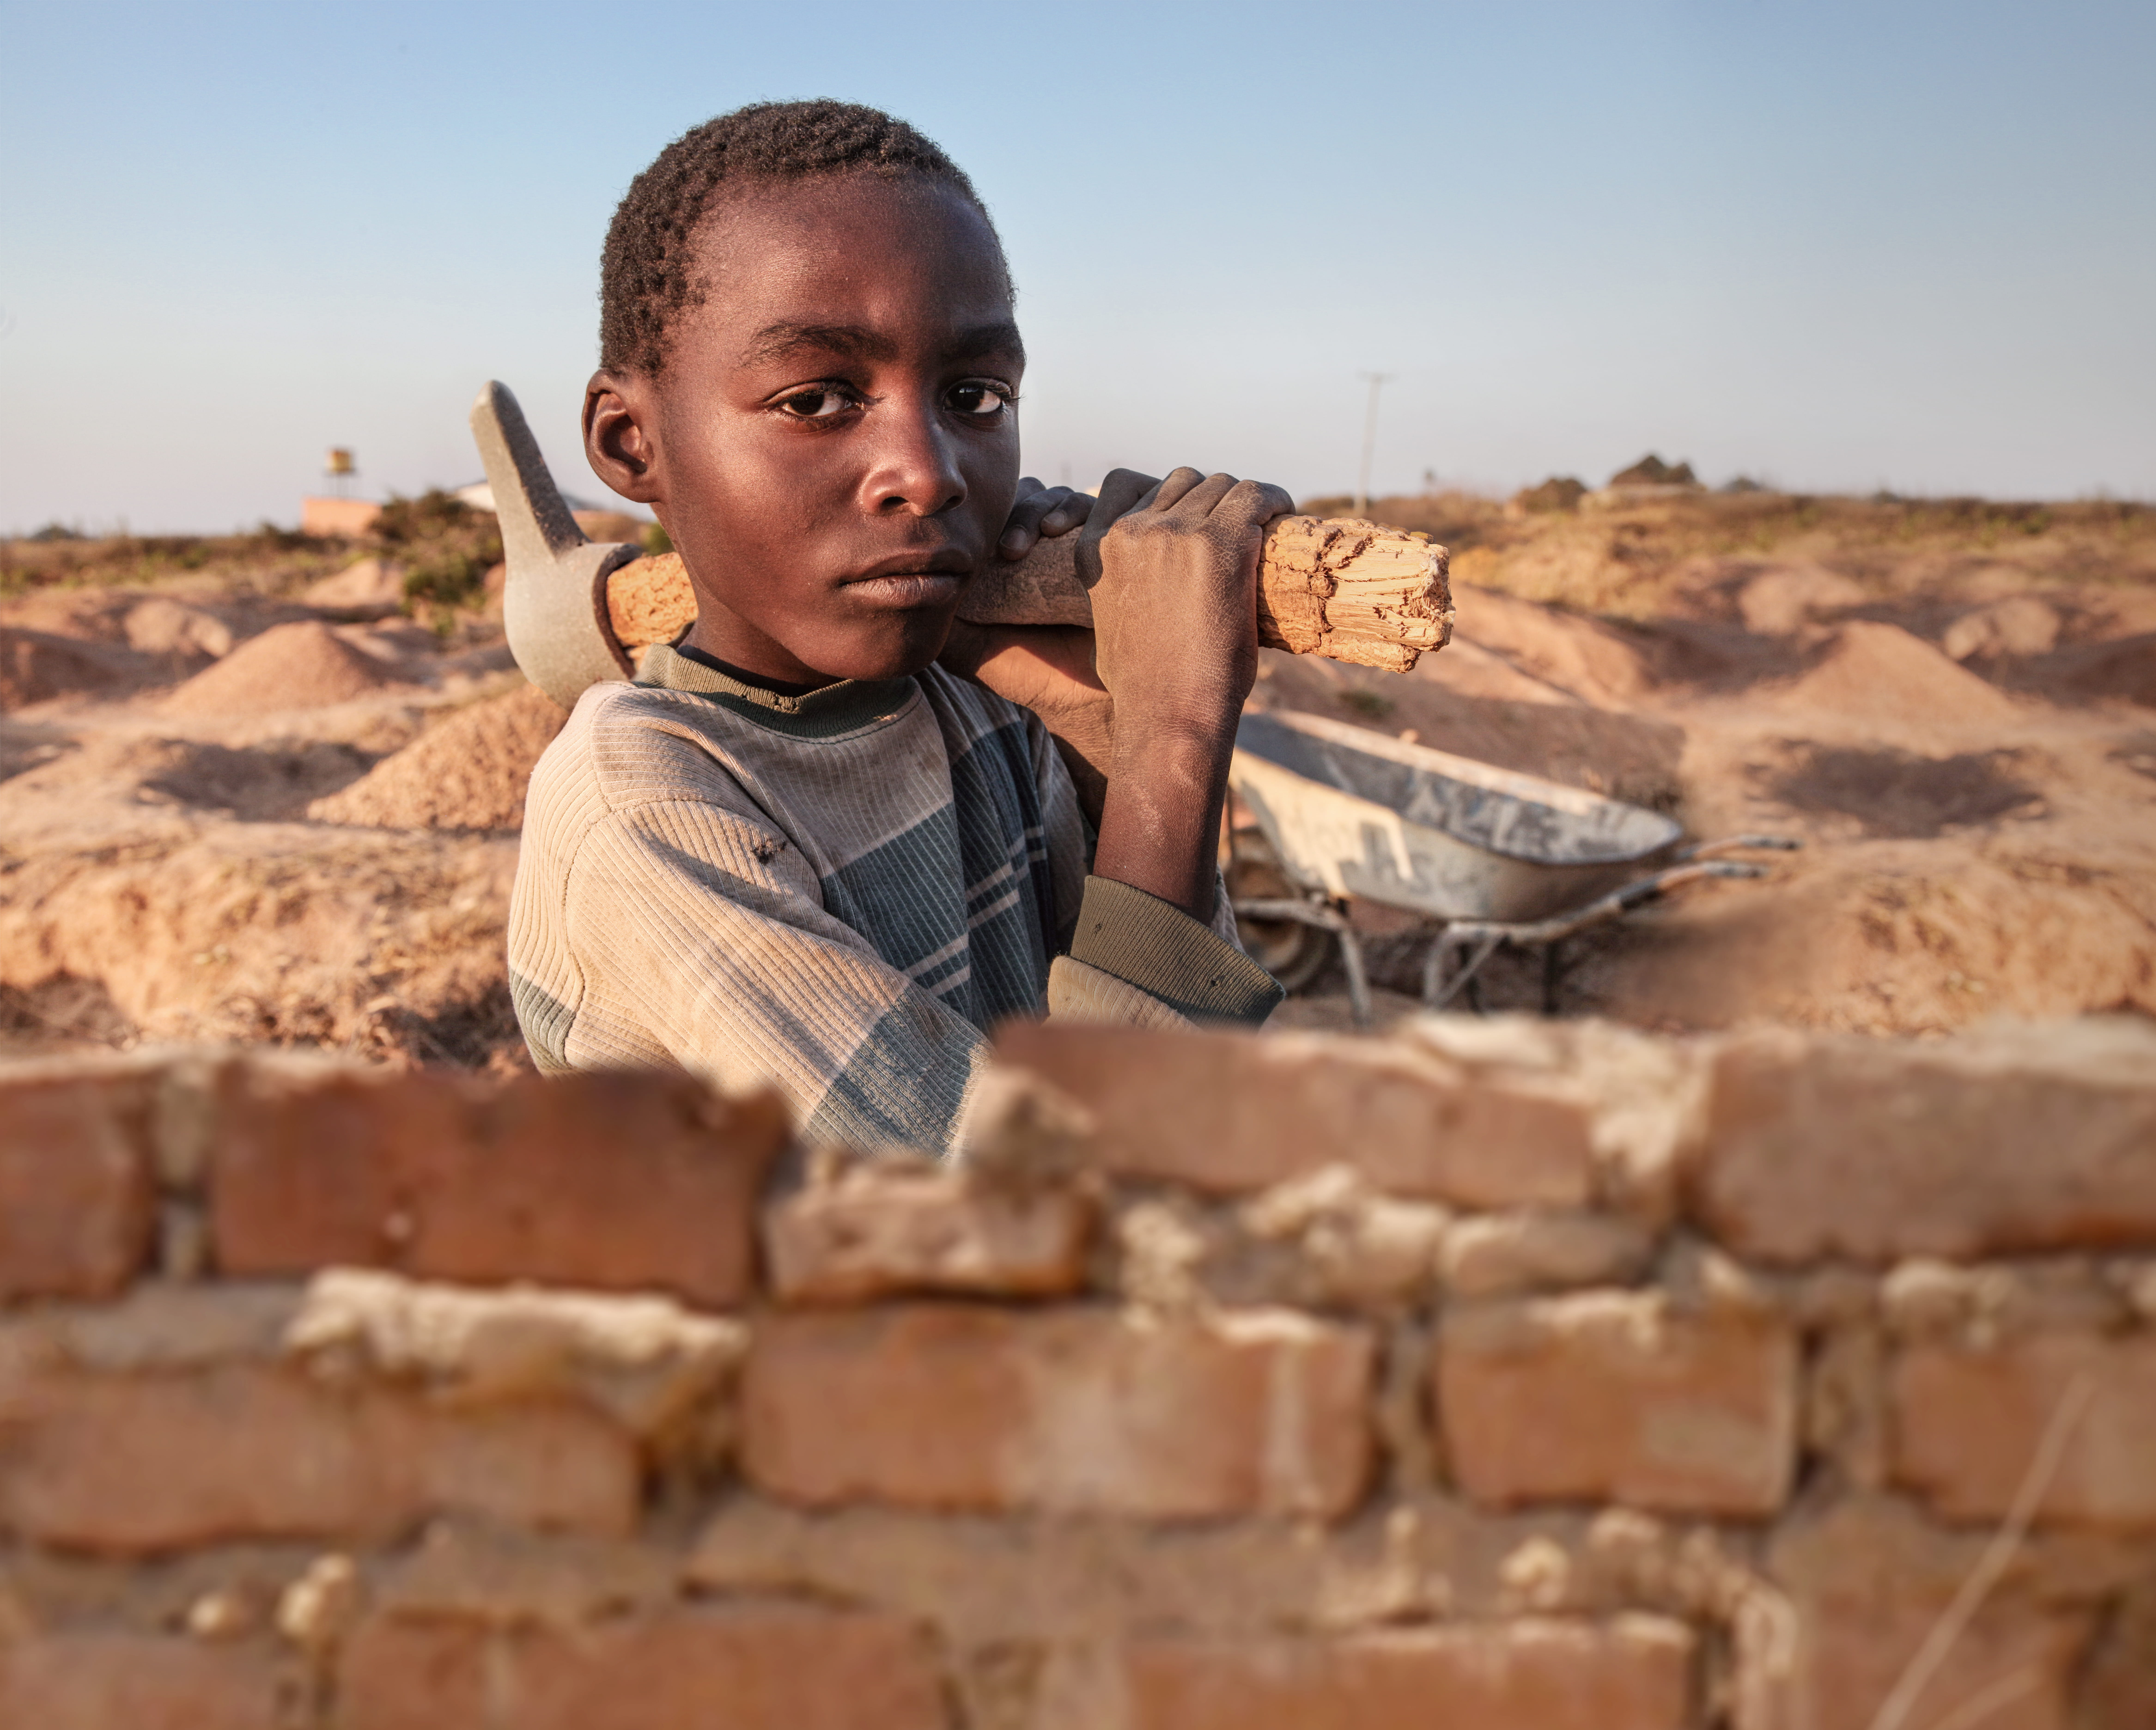 Ein Junge in Sambia trägt eine schwere Spitzhacke (Quelle: Christian Herrmanny)